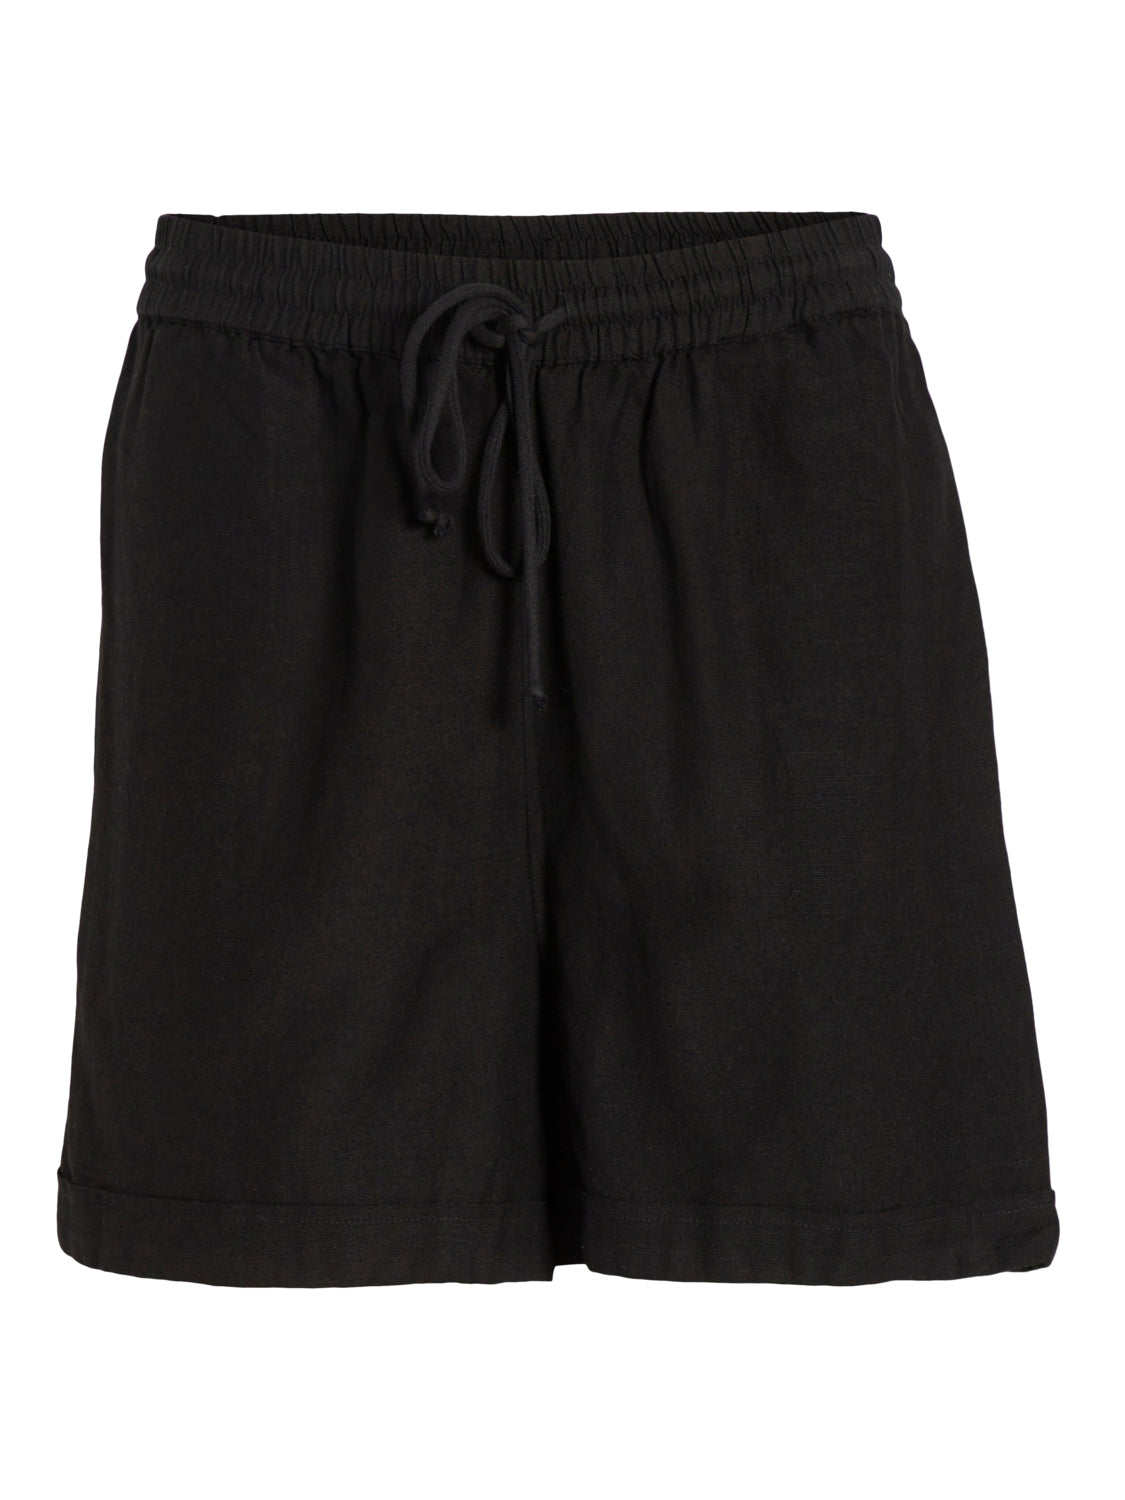 VIPRISILLA Shorts - Black